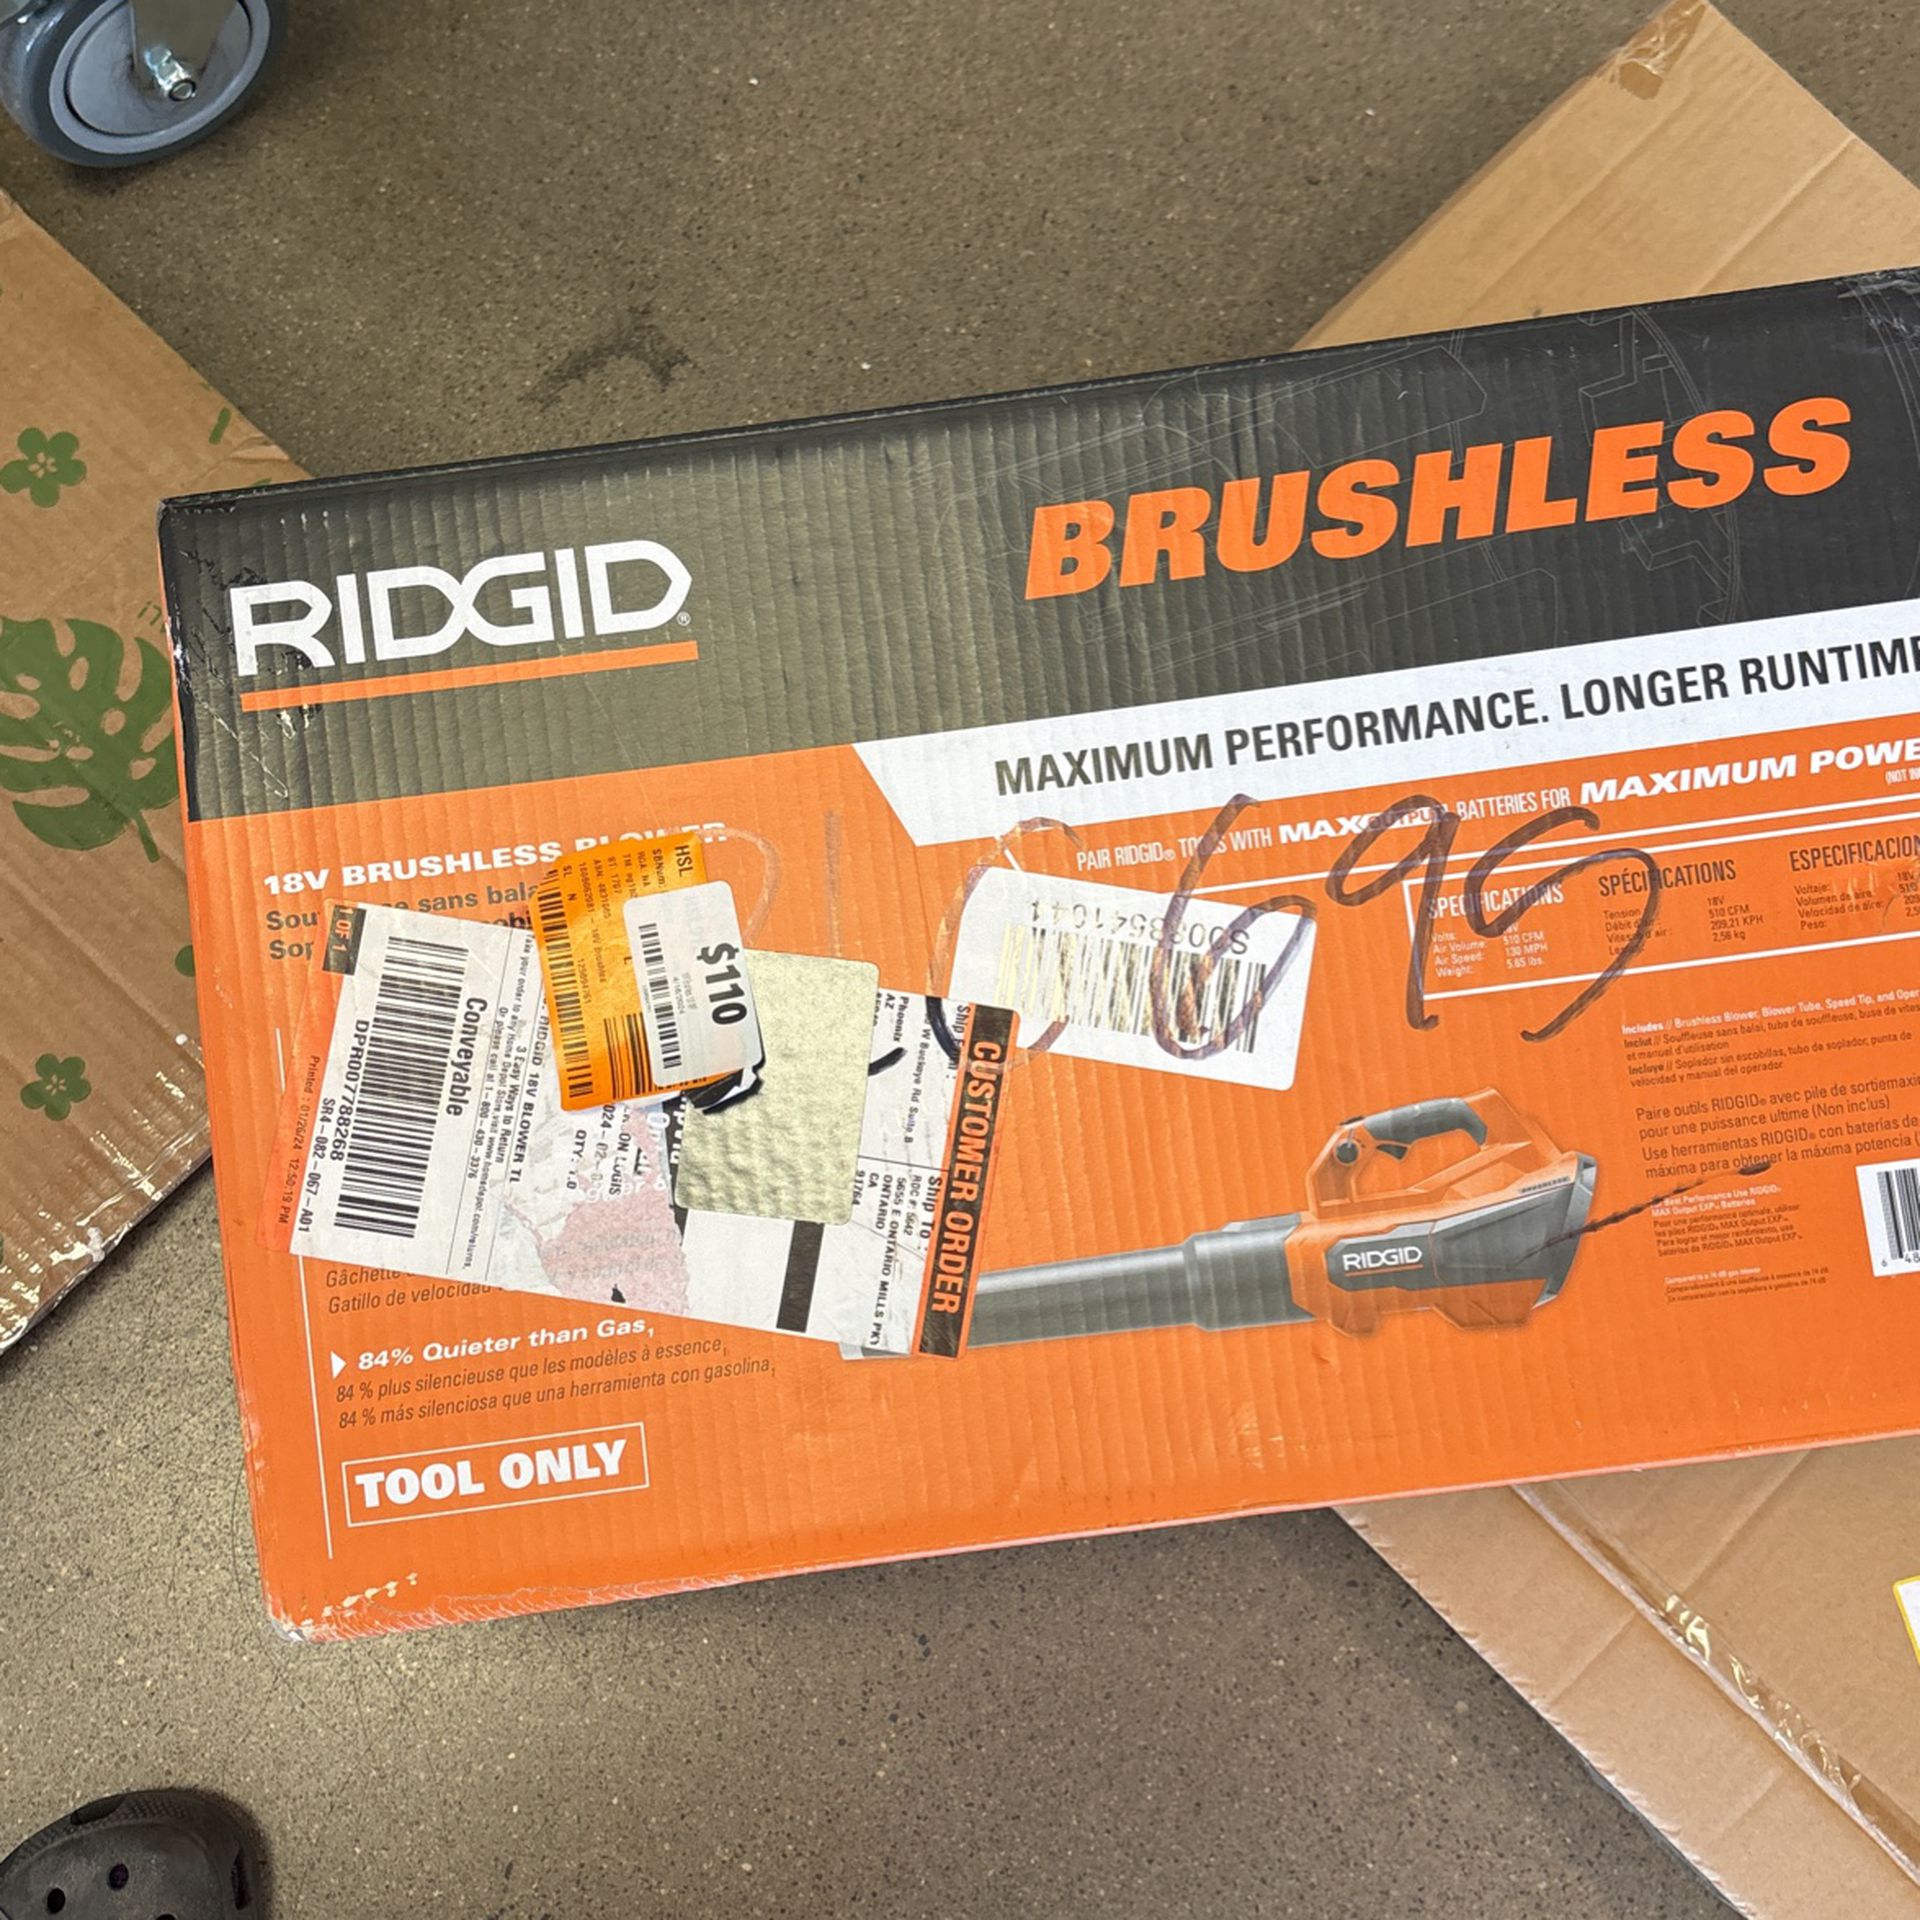 RIDGID 18V Brushless 130 MPH 510 CFM Cordless Battery Leaf Blower (Tool Only)